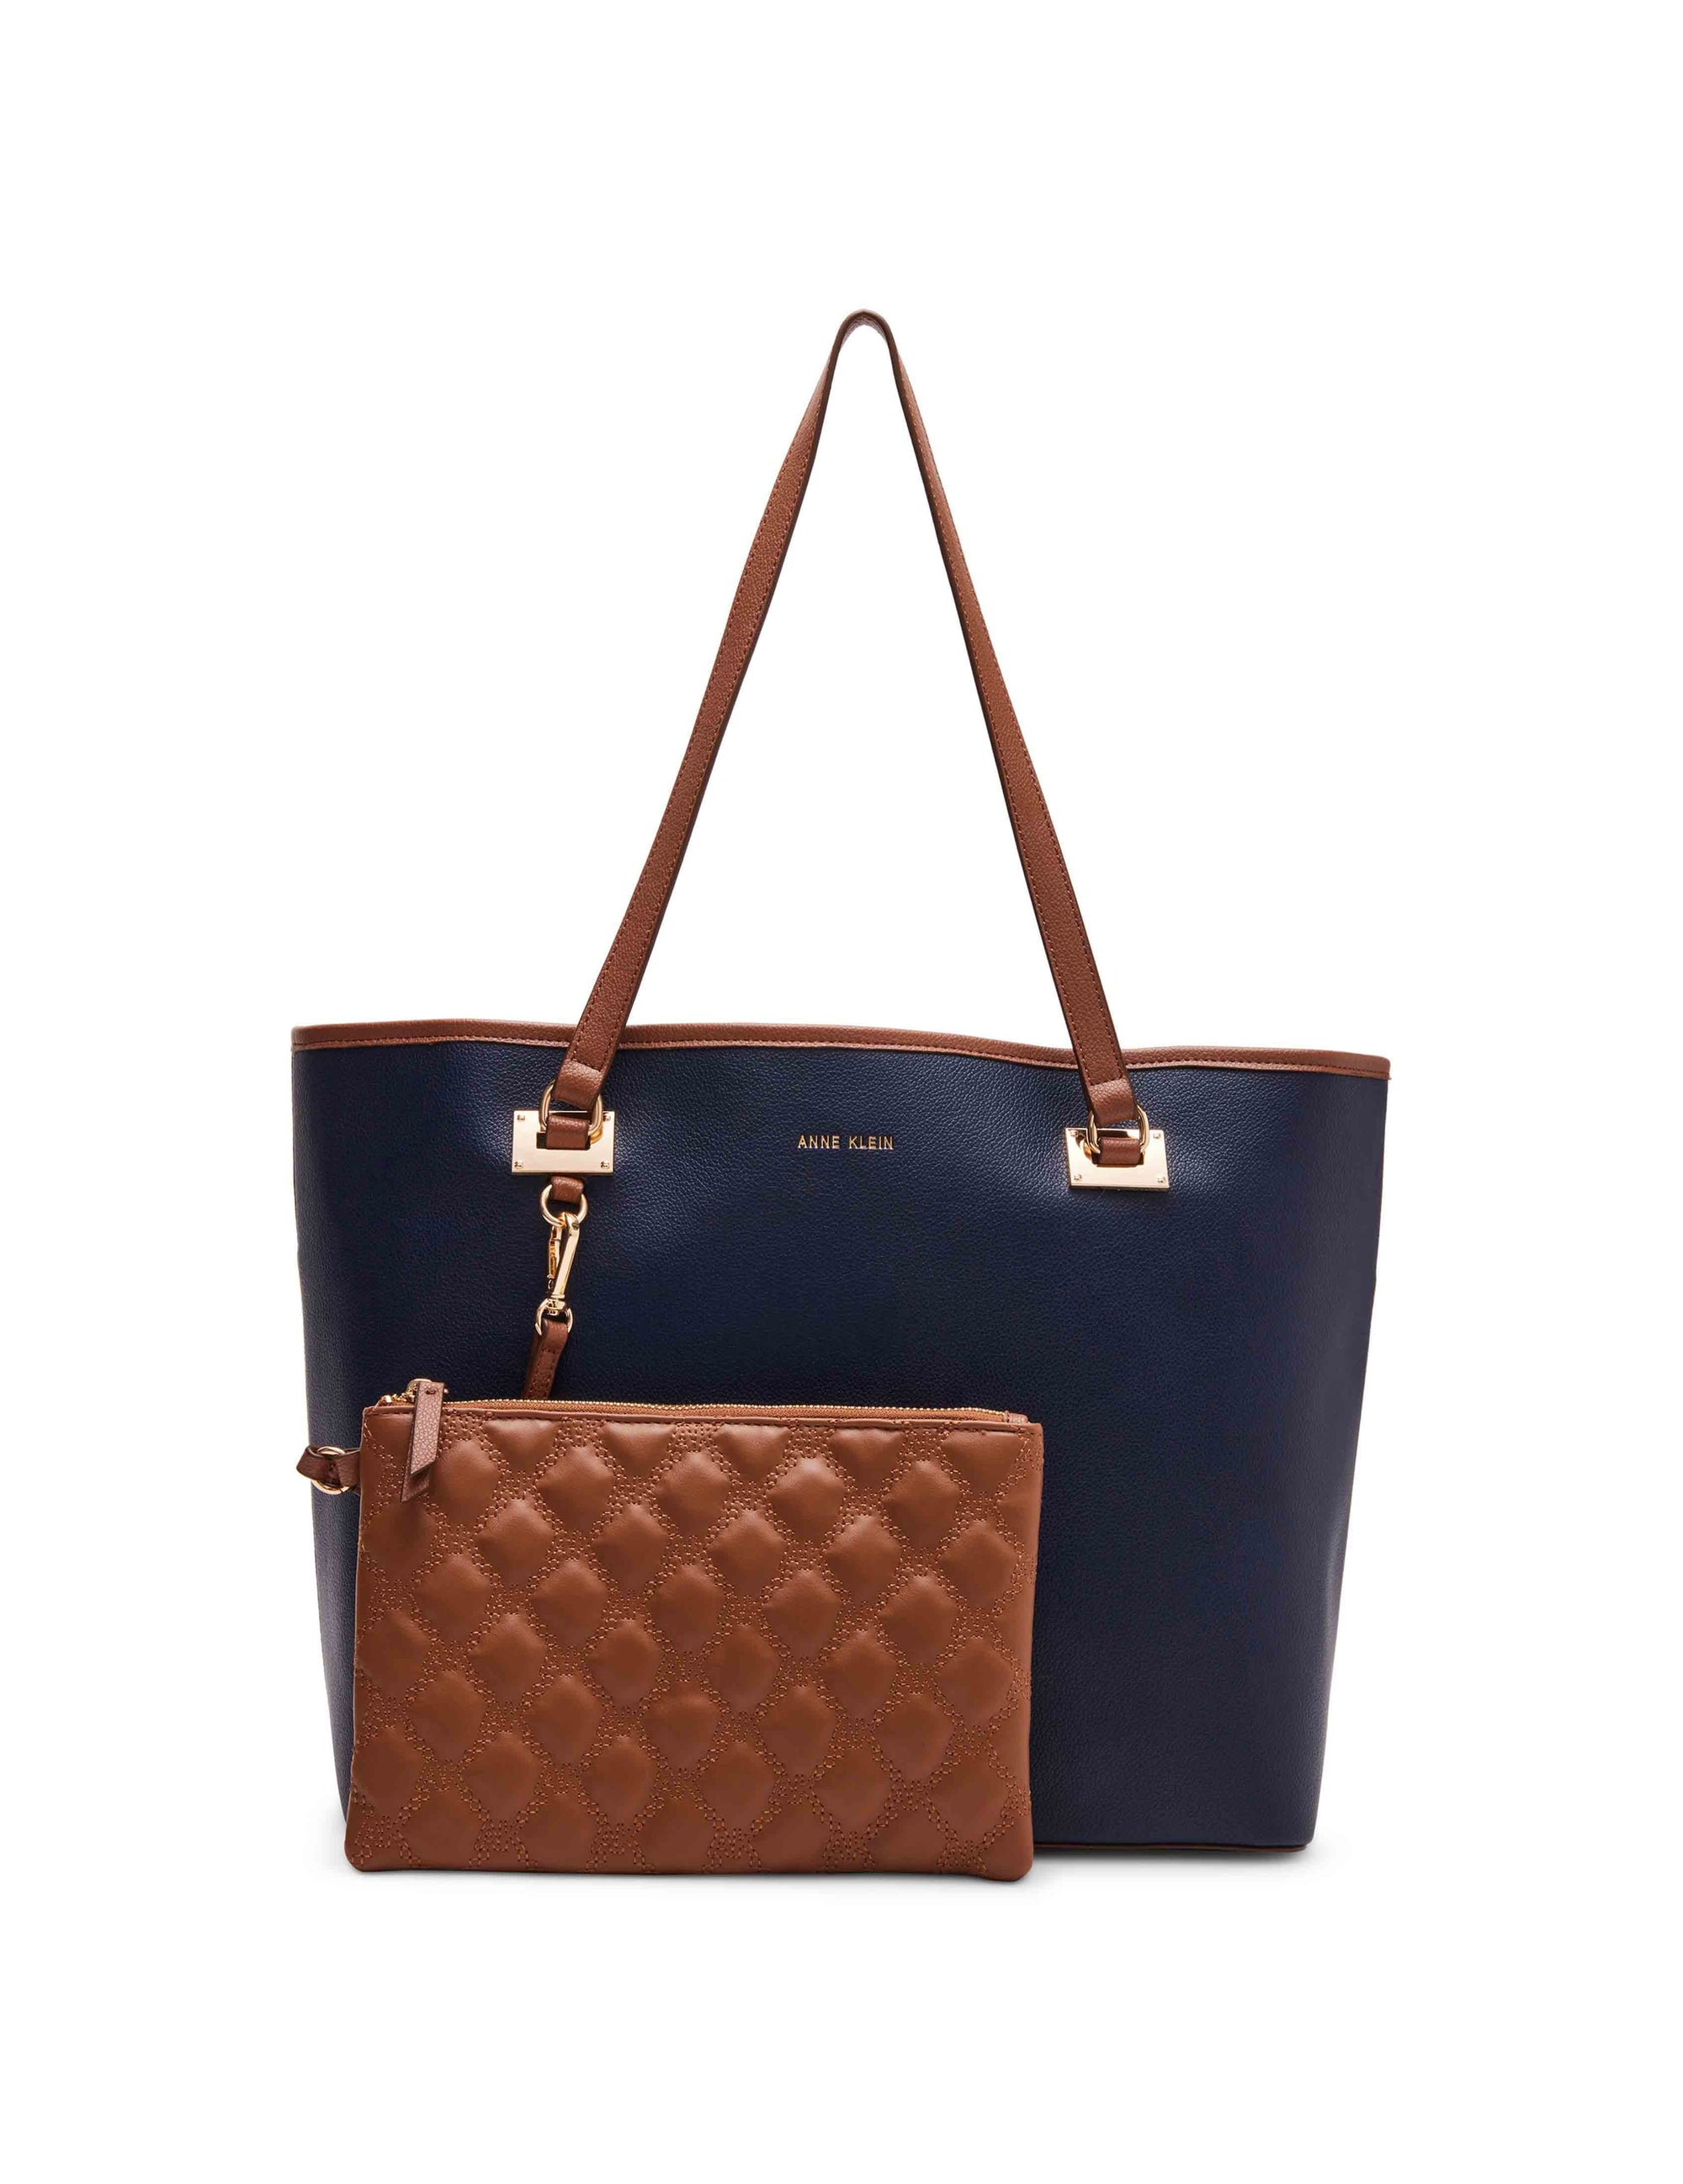 ANNE KLEIN Handbag - Blue OS In great condition,... - Depop